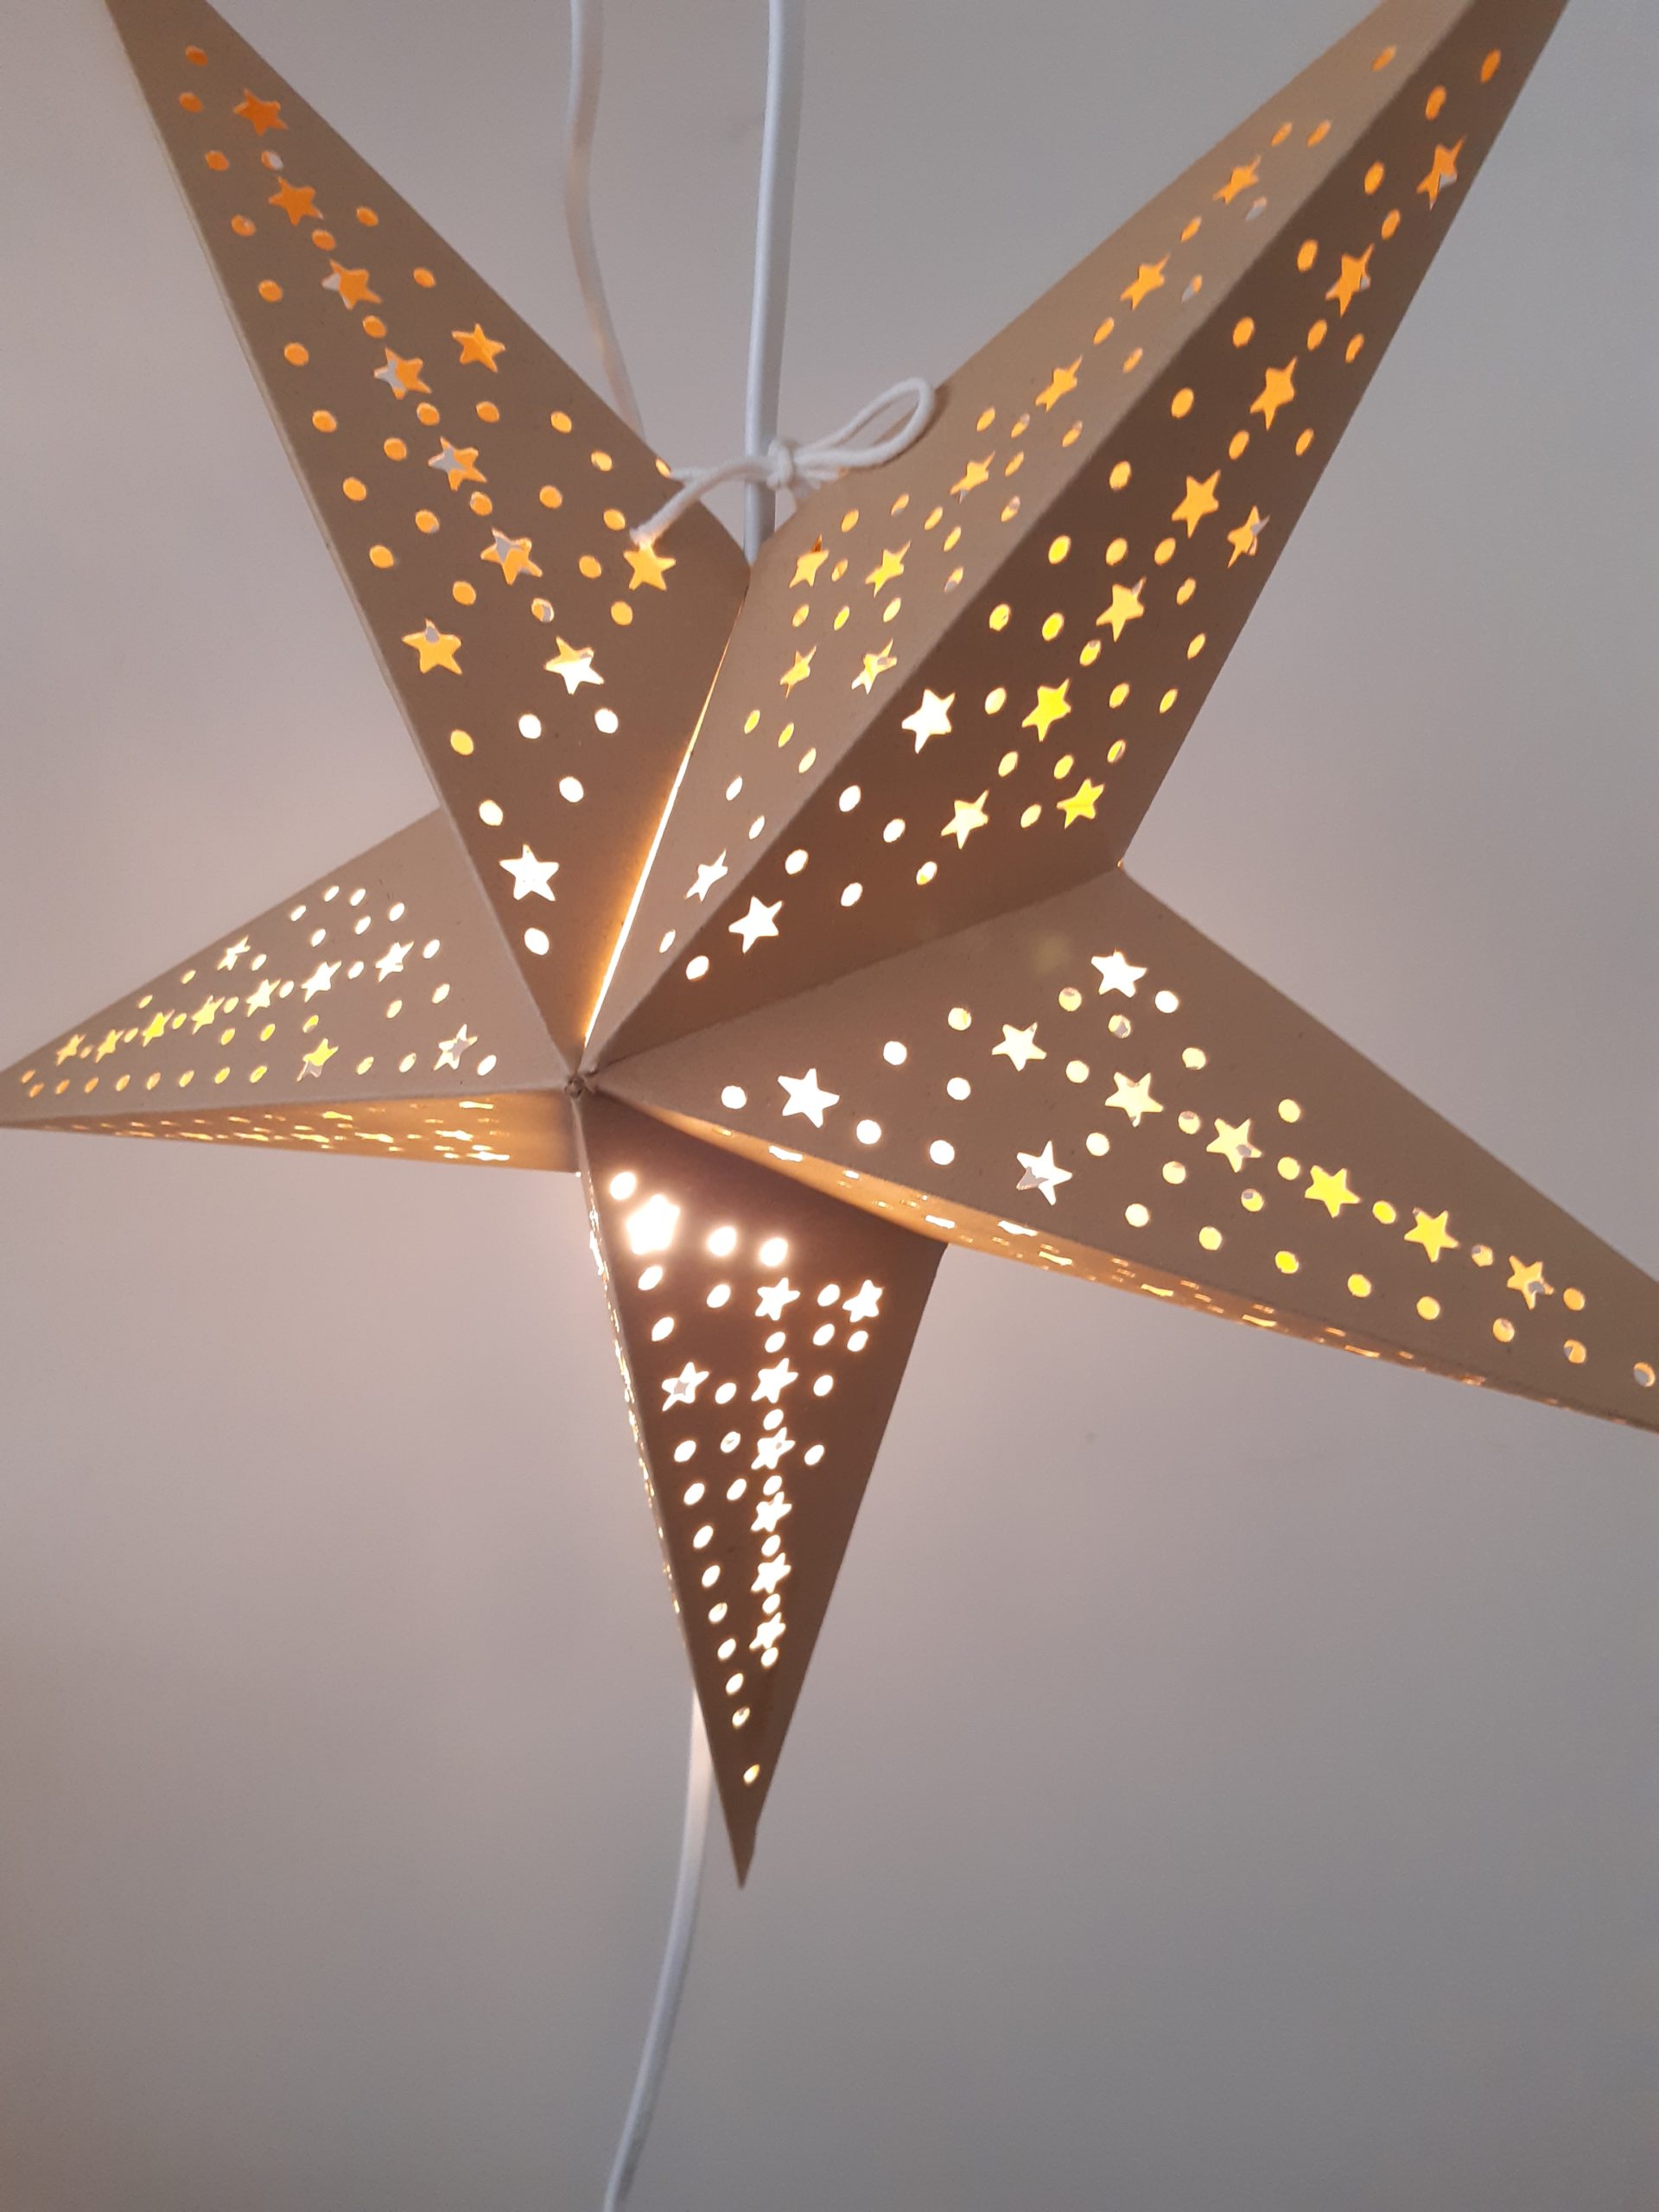 Versterker maag expositie Kerstster karton met gaatjes LED licht - Petit Depot